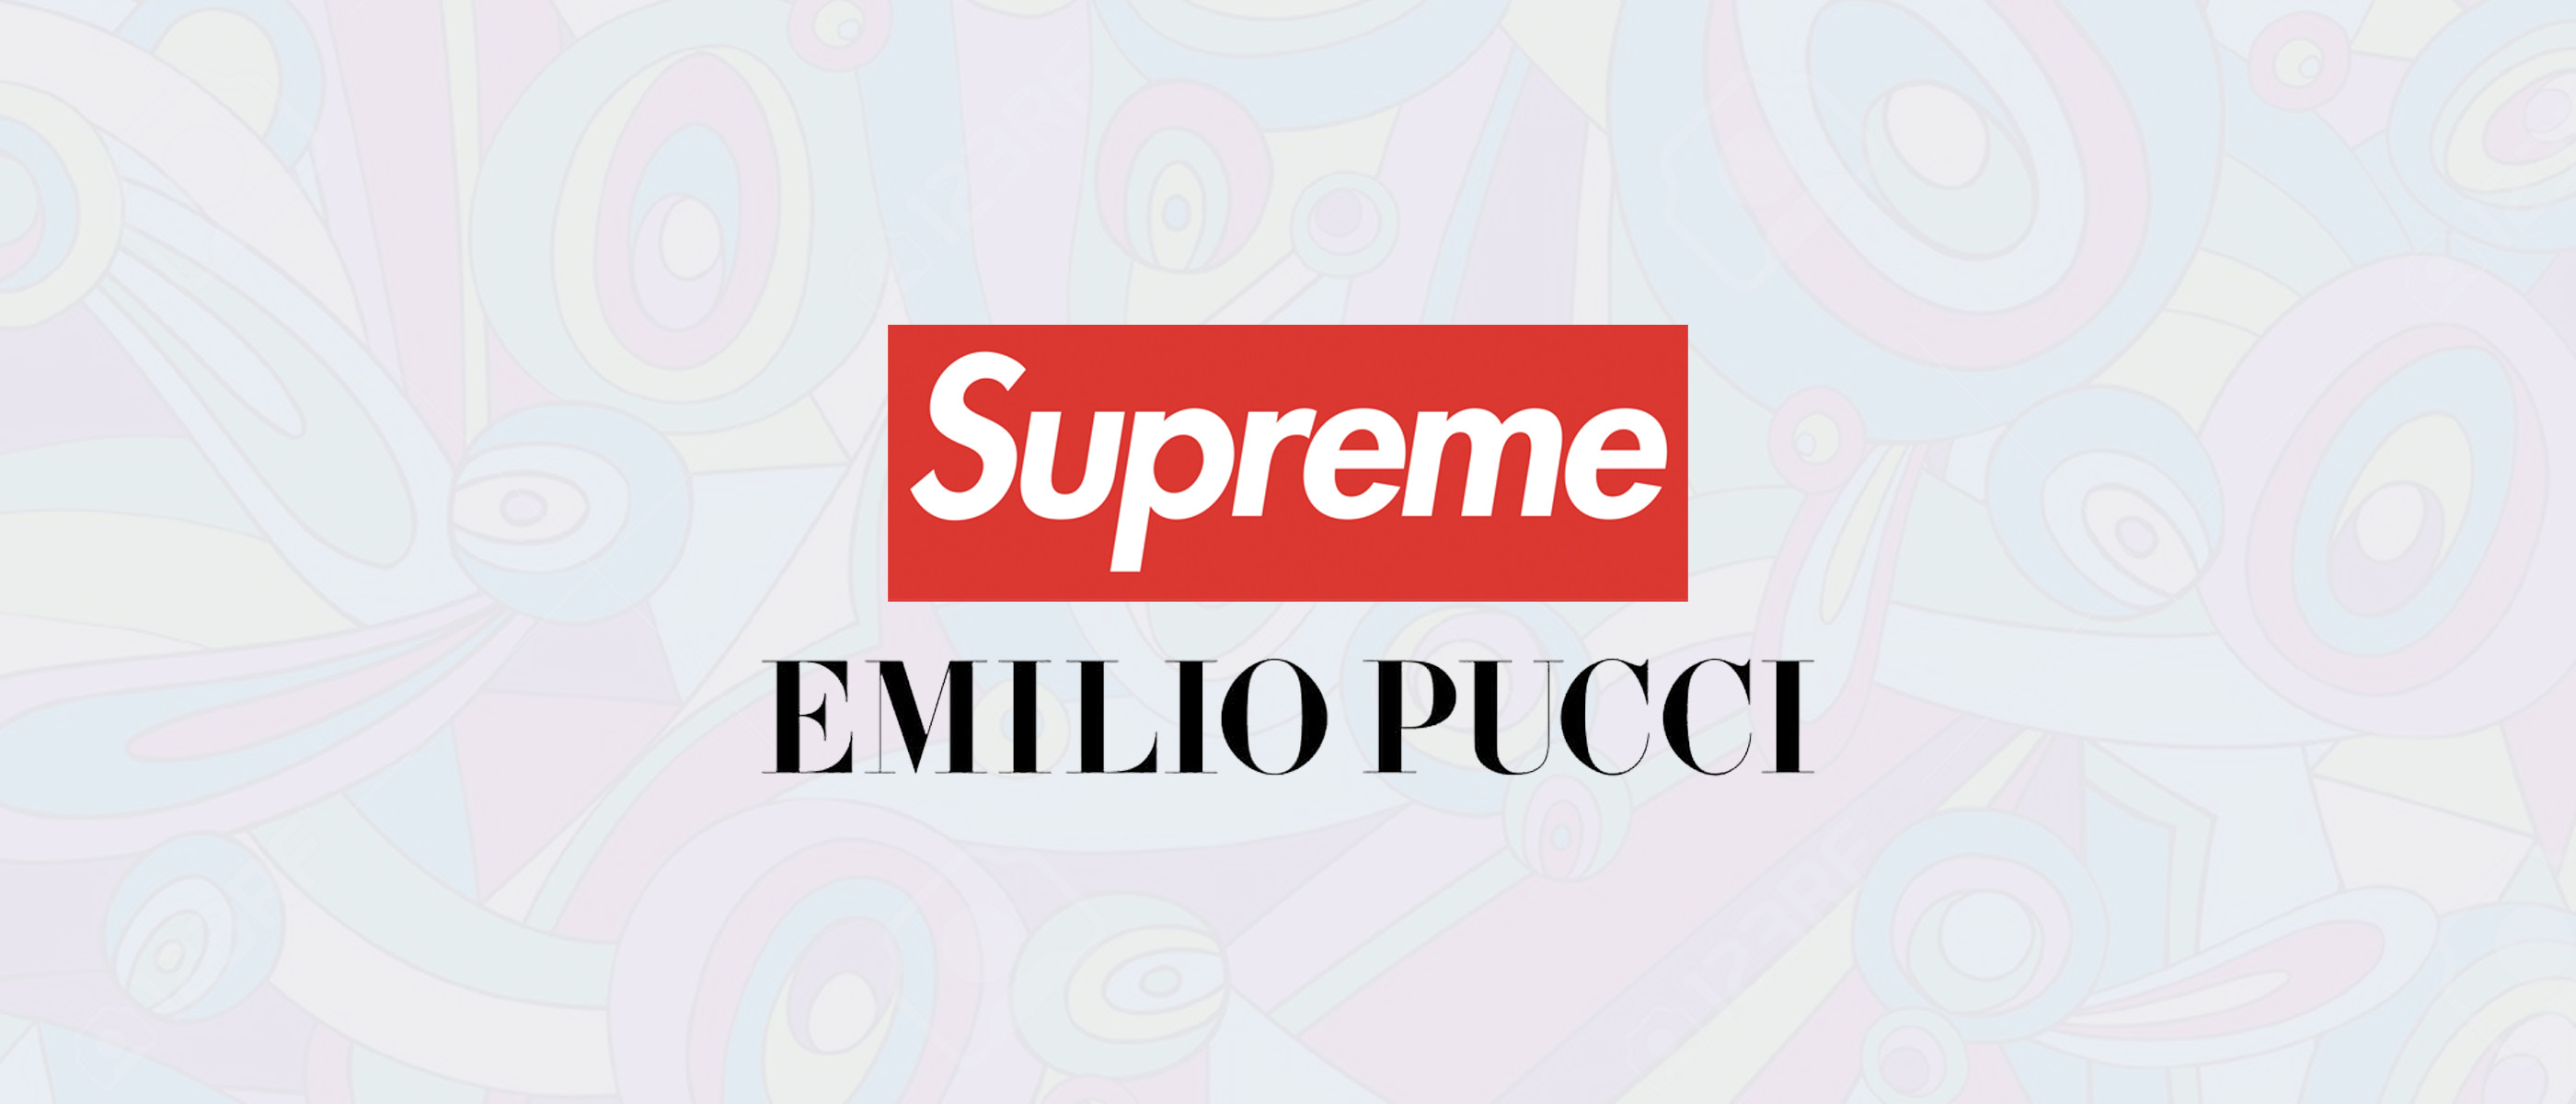 Supreme and Emilio Pucci Collaboration 